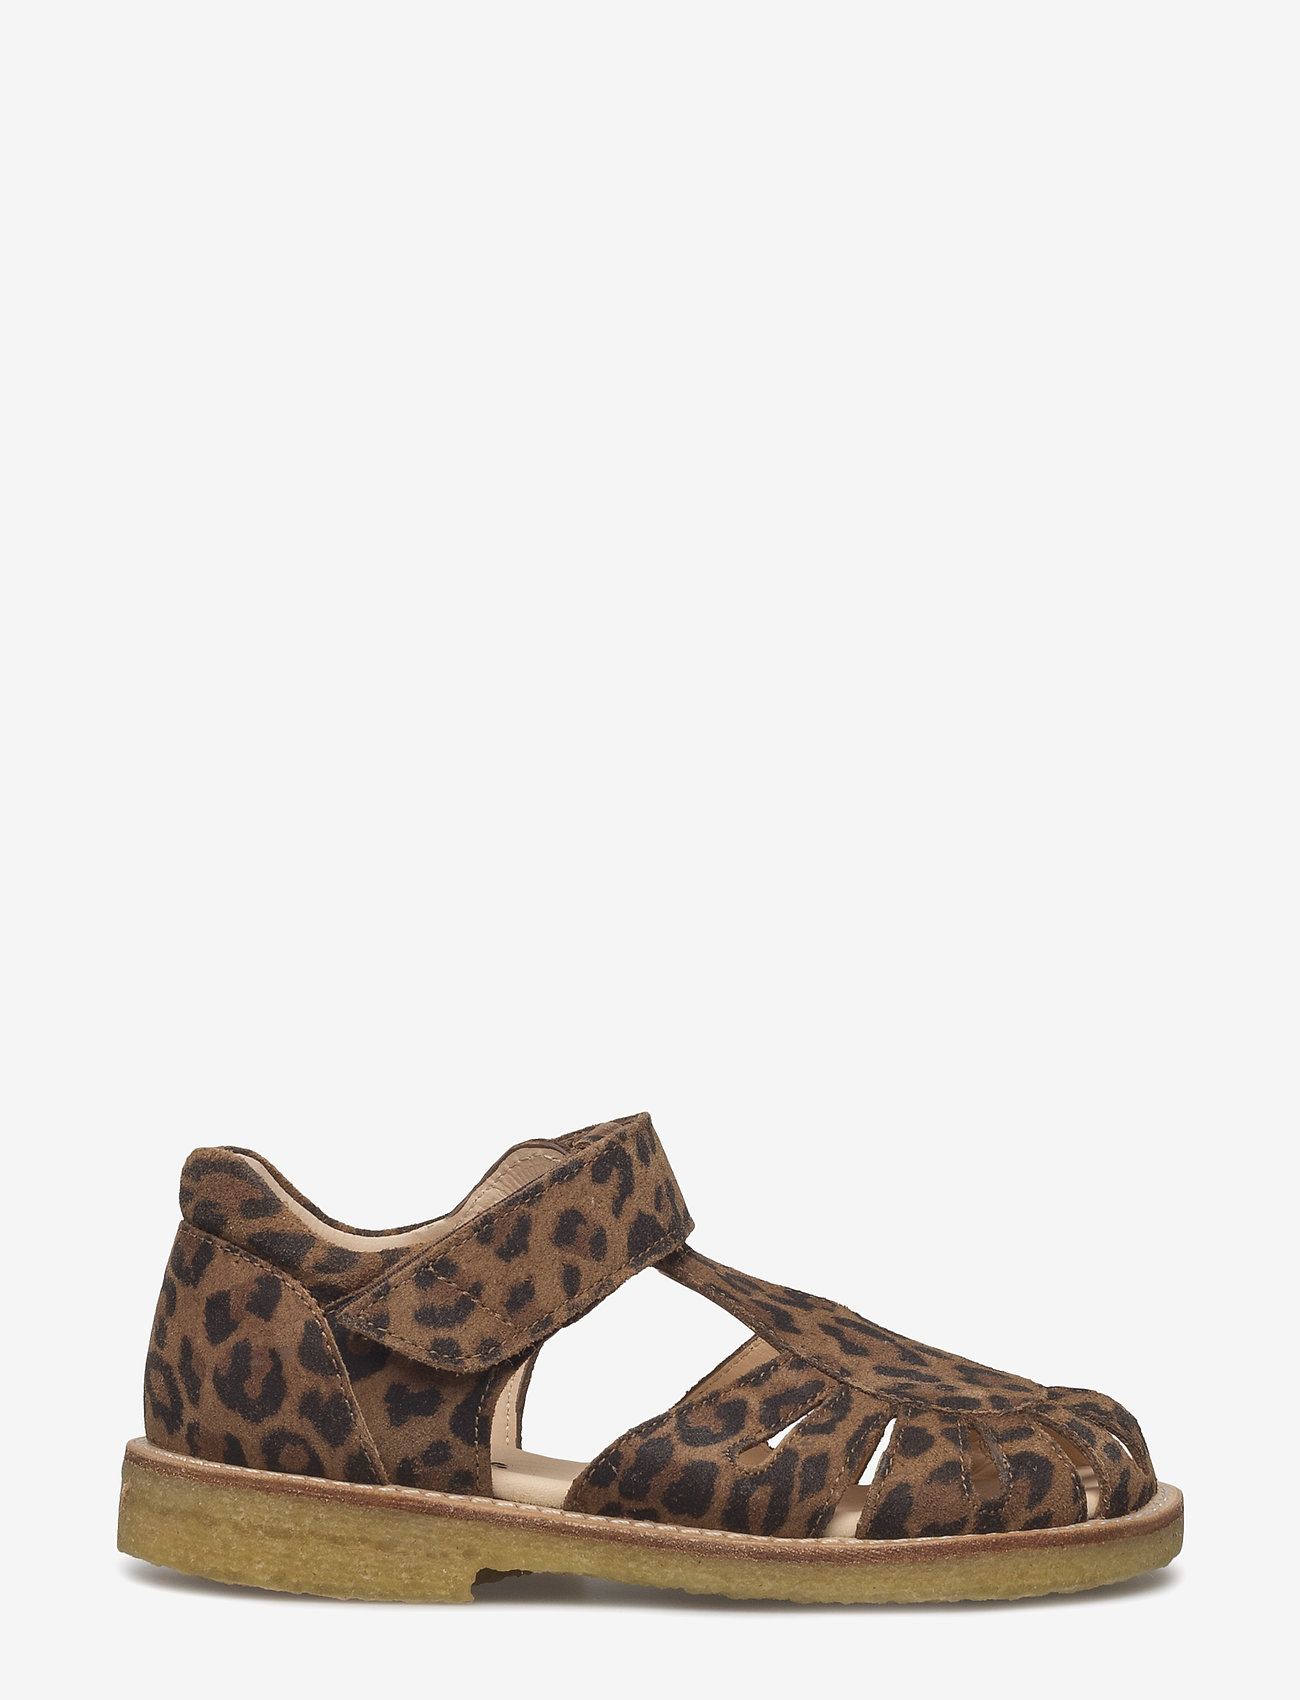 ANGULUS - Sandals - flat - closed toe -  - sandaler med rem - 2164 leopard - 1